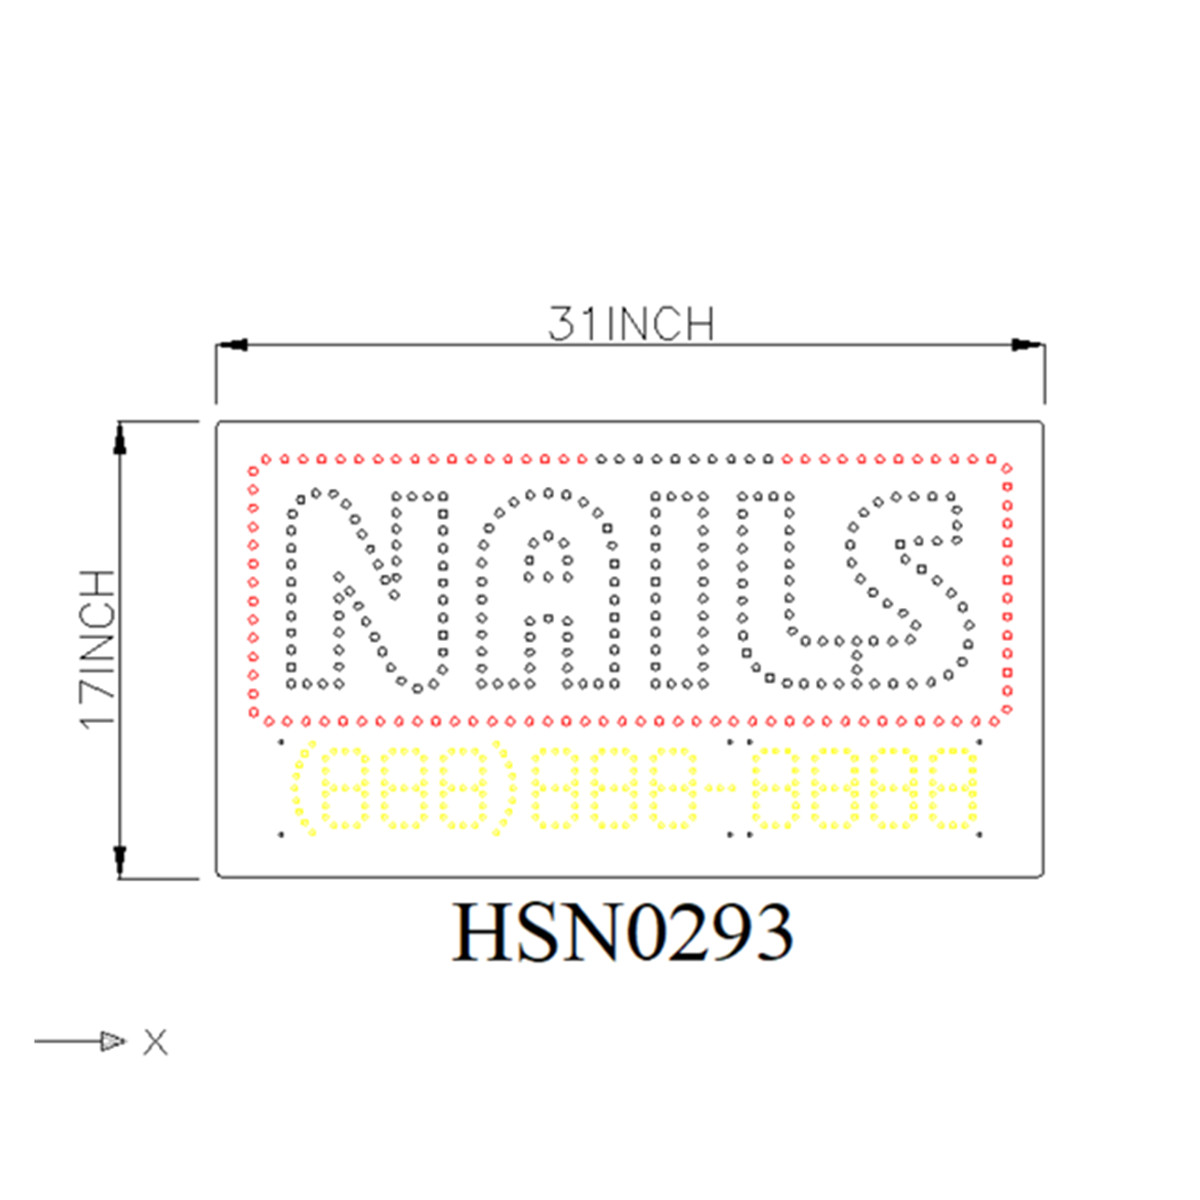 nails customized led sign